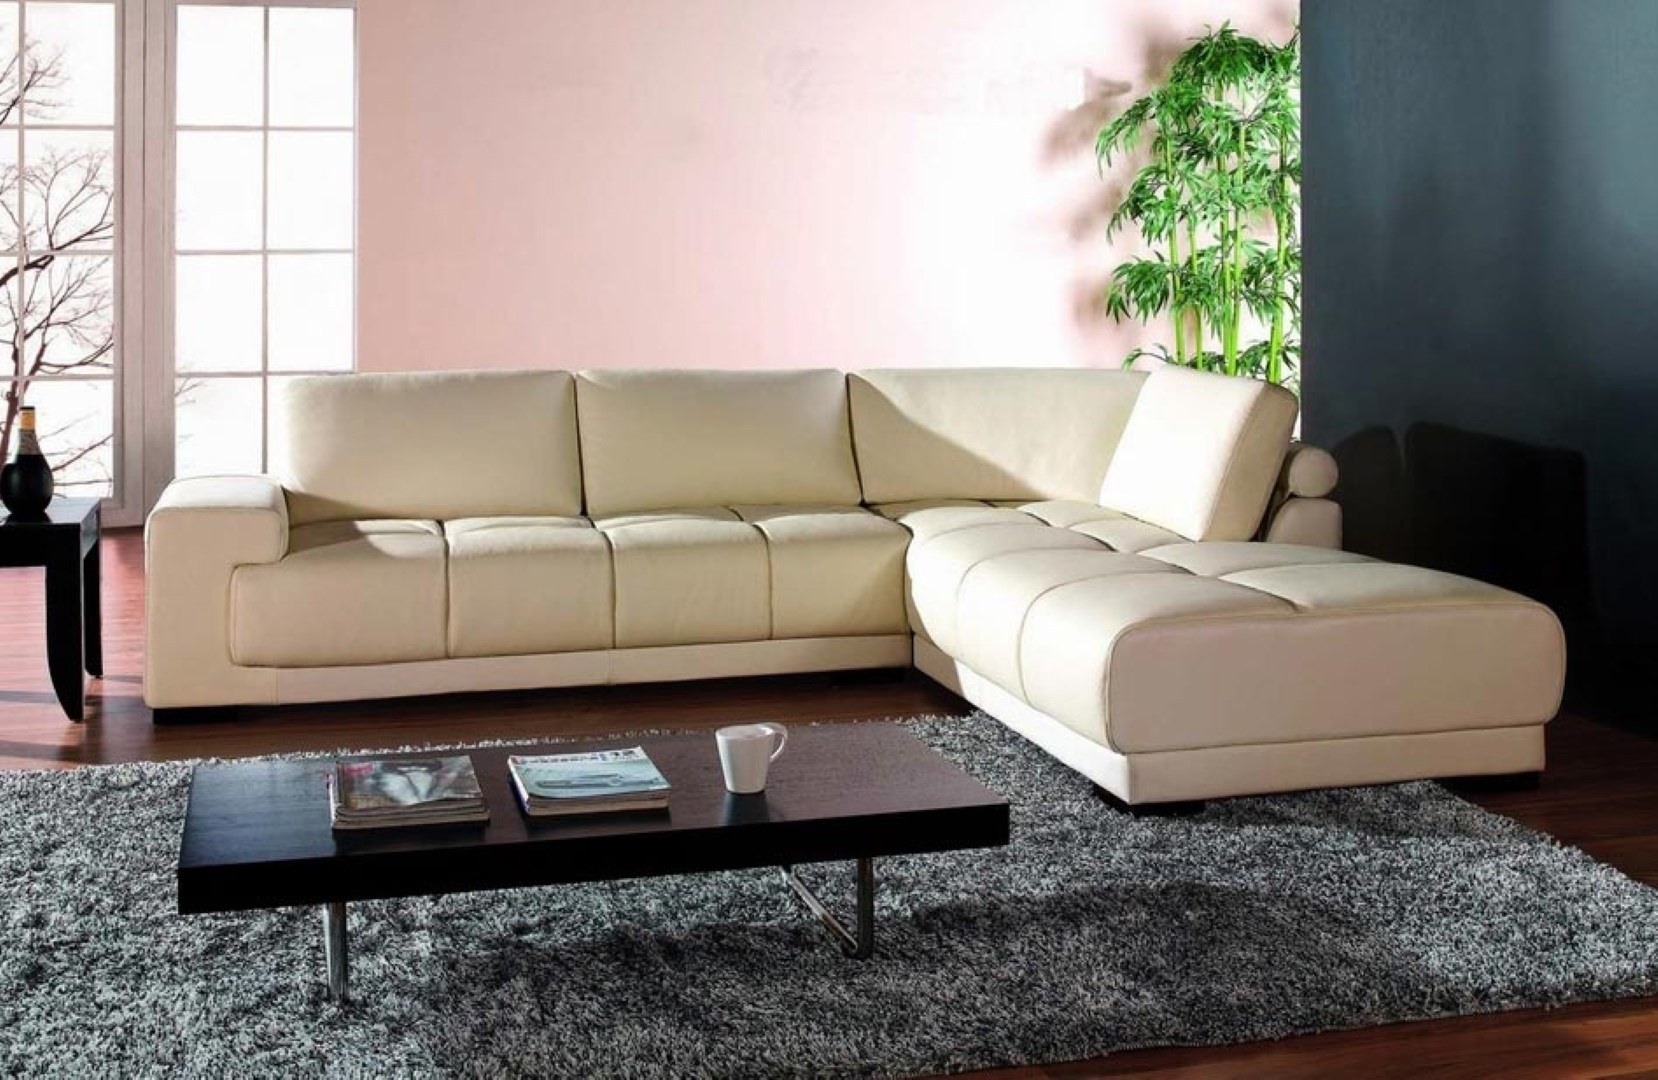 Угловые диваны хорошего качества. Красивые диваны. Красивые диваны для гостиной. Красивый диван в интерьере. Диван угловой.